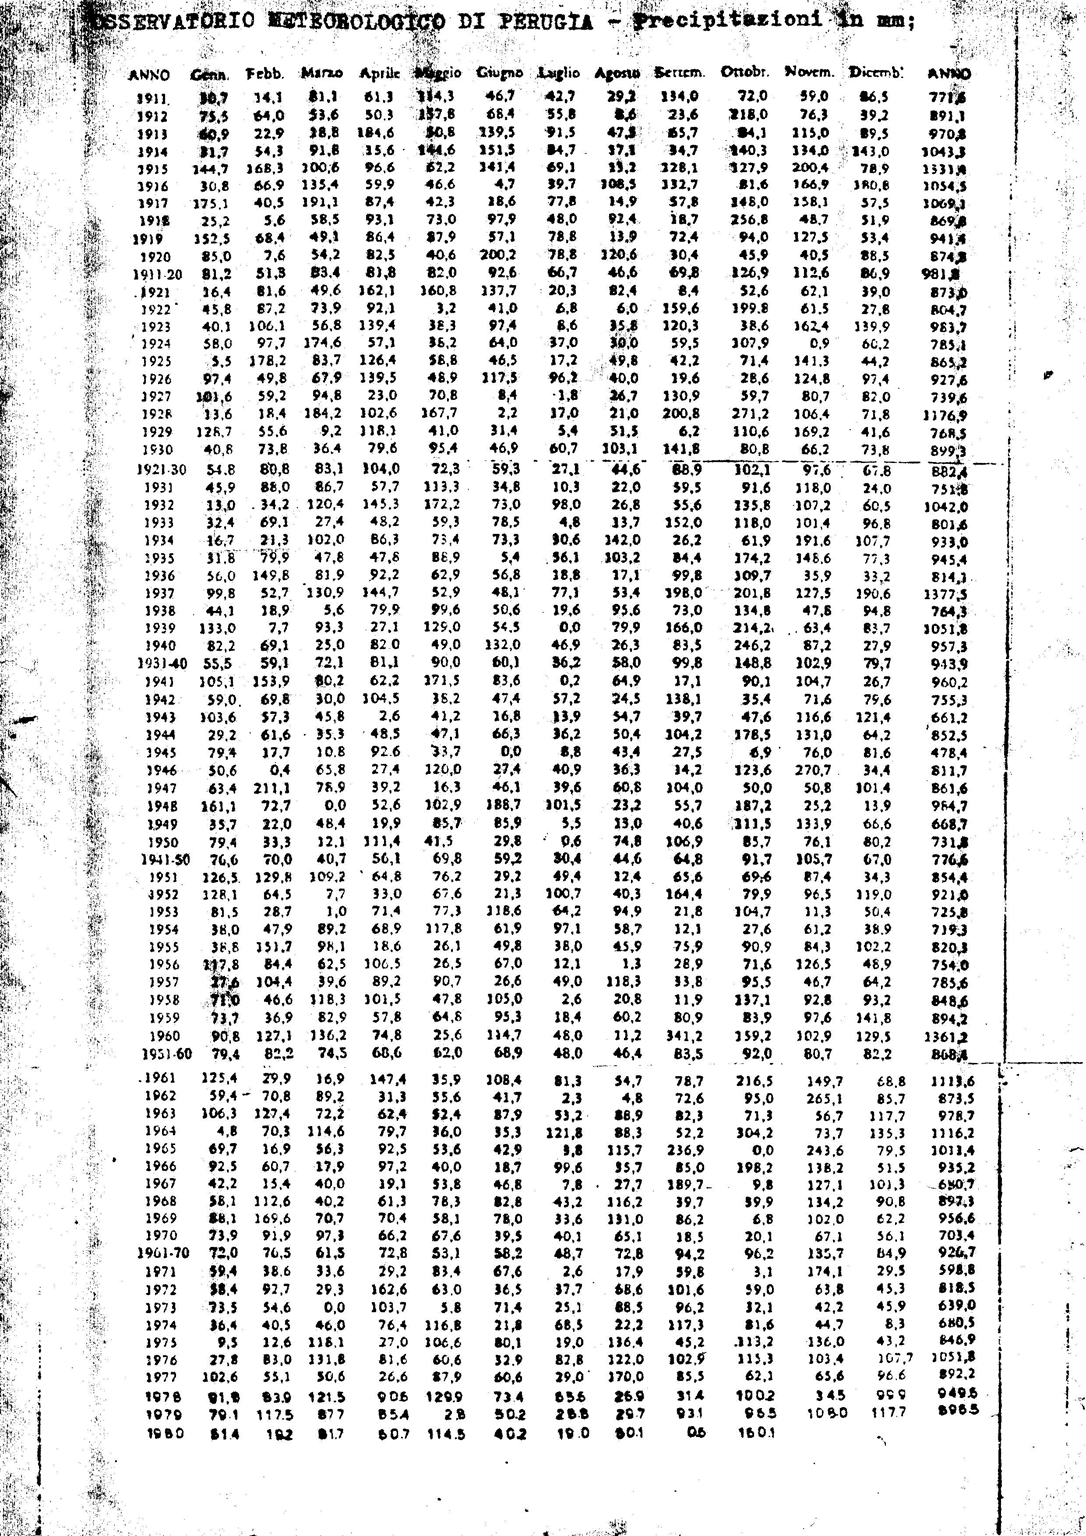 Tabella riepilogativa dei dati pluviometrici nella città di Perugia dal 1911 al 1980, gentilmente donati dall'ing.